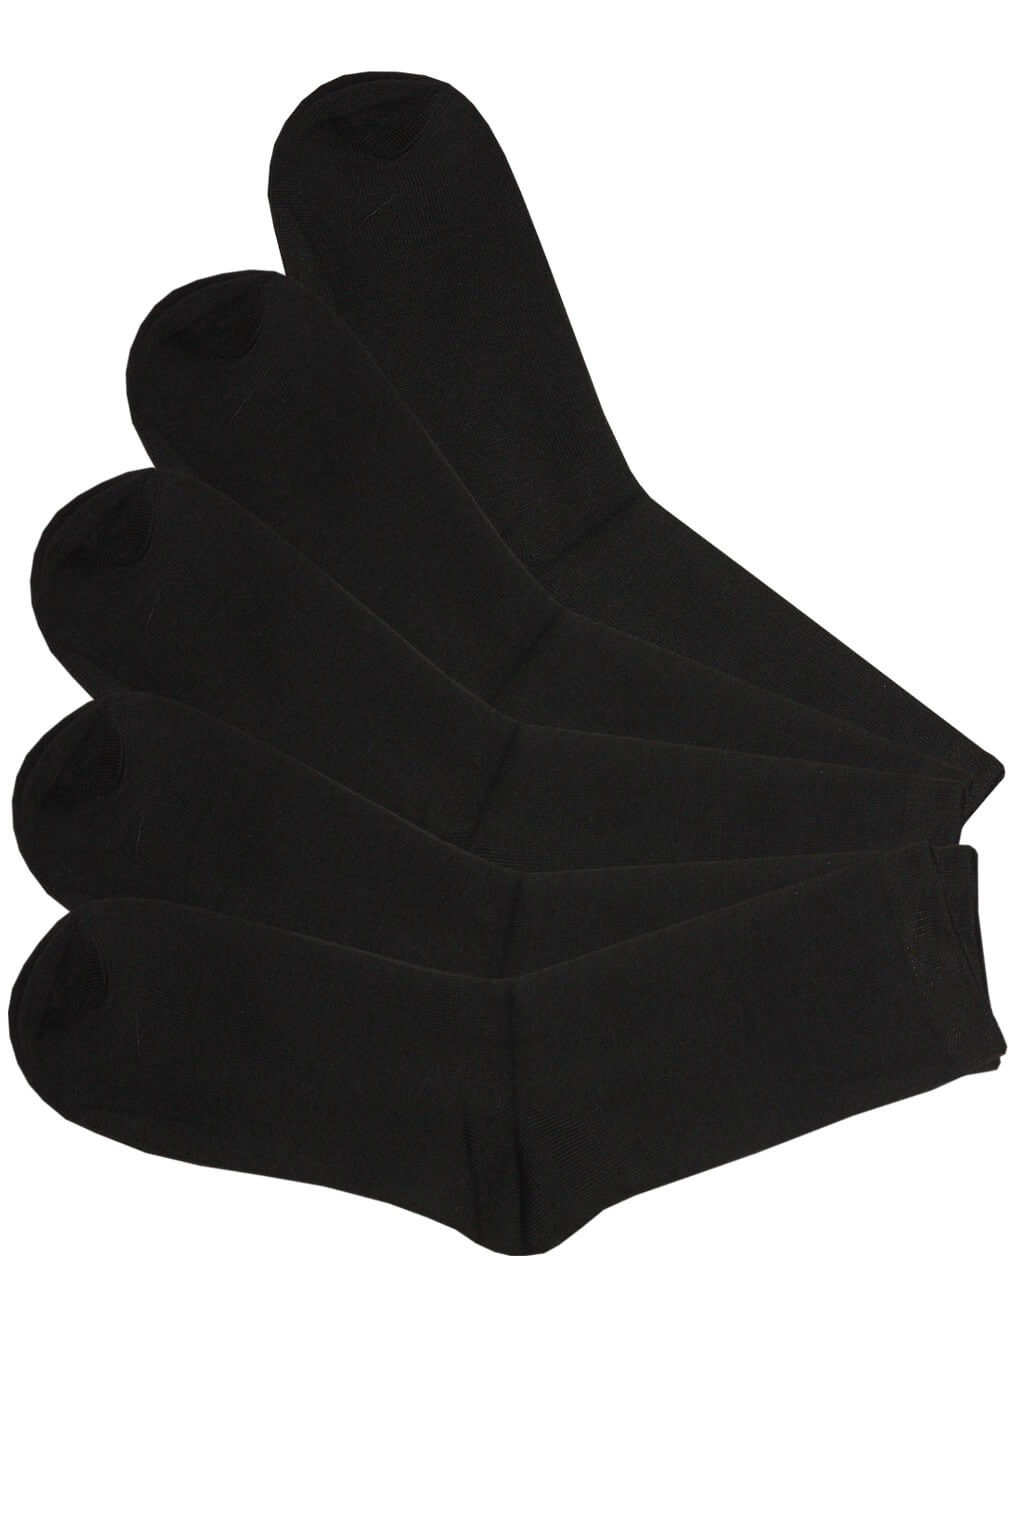 Bavlněné pánské ponožky levně B-5056 - 5 párů 39-42 černá